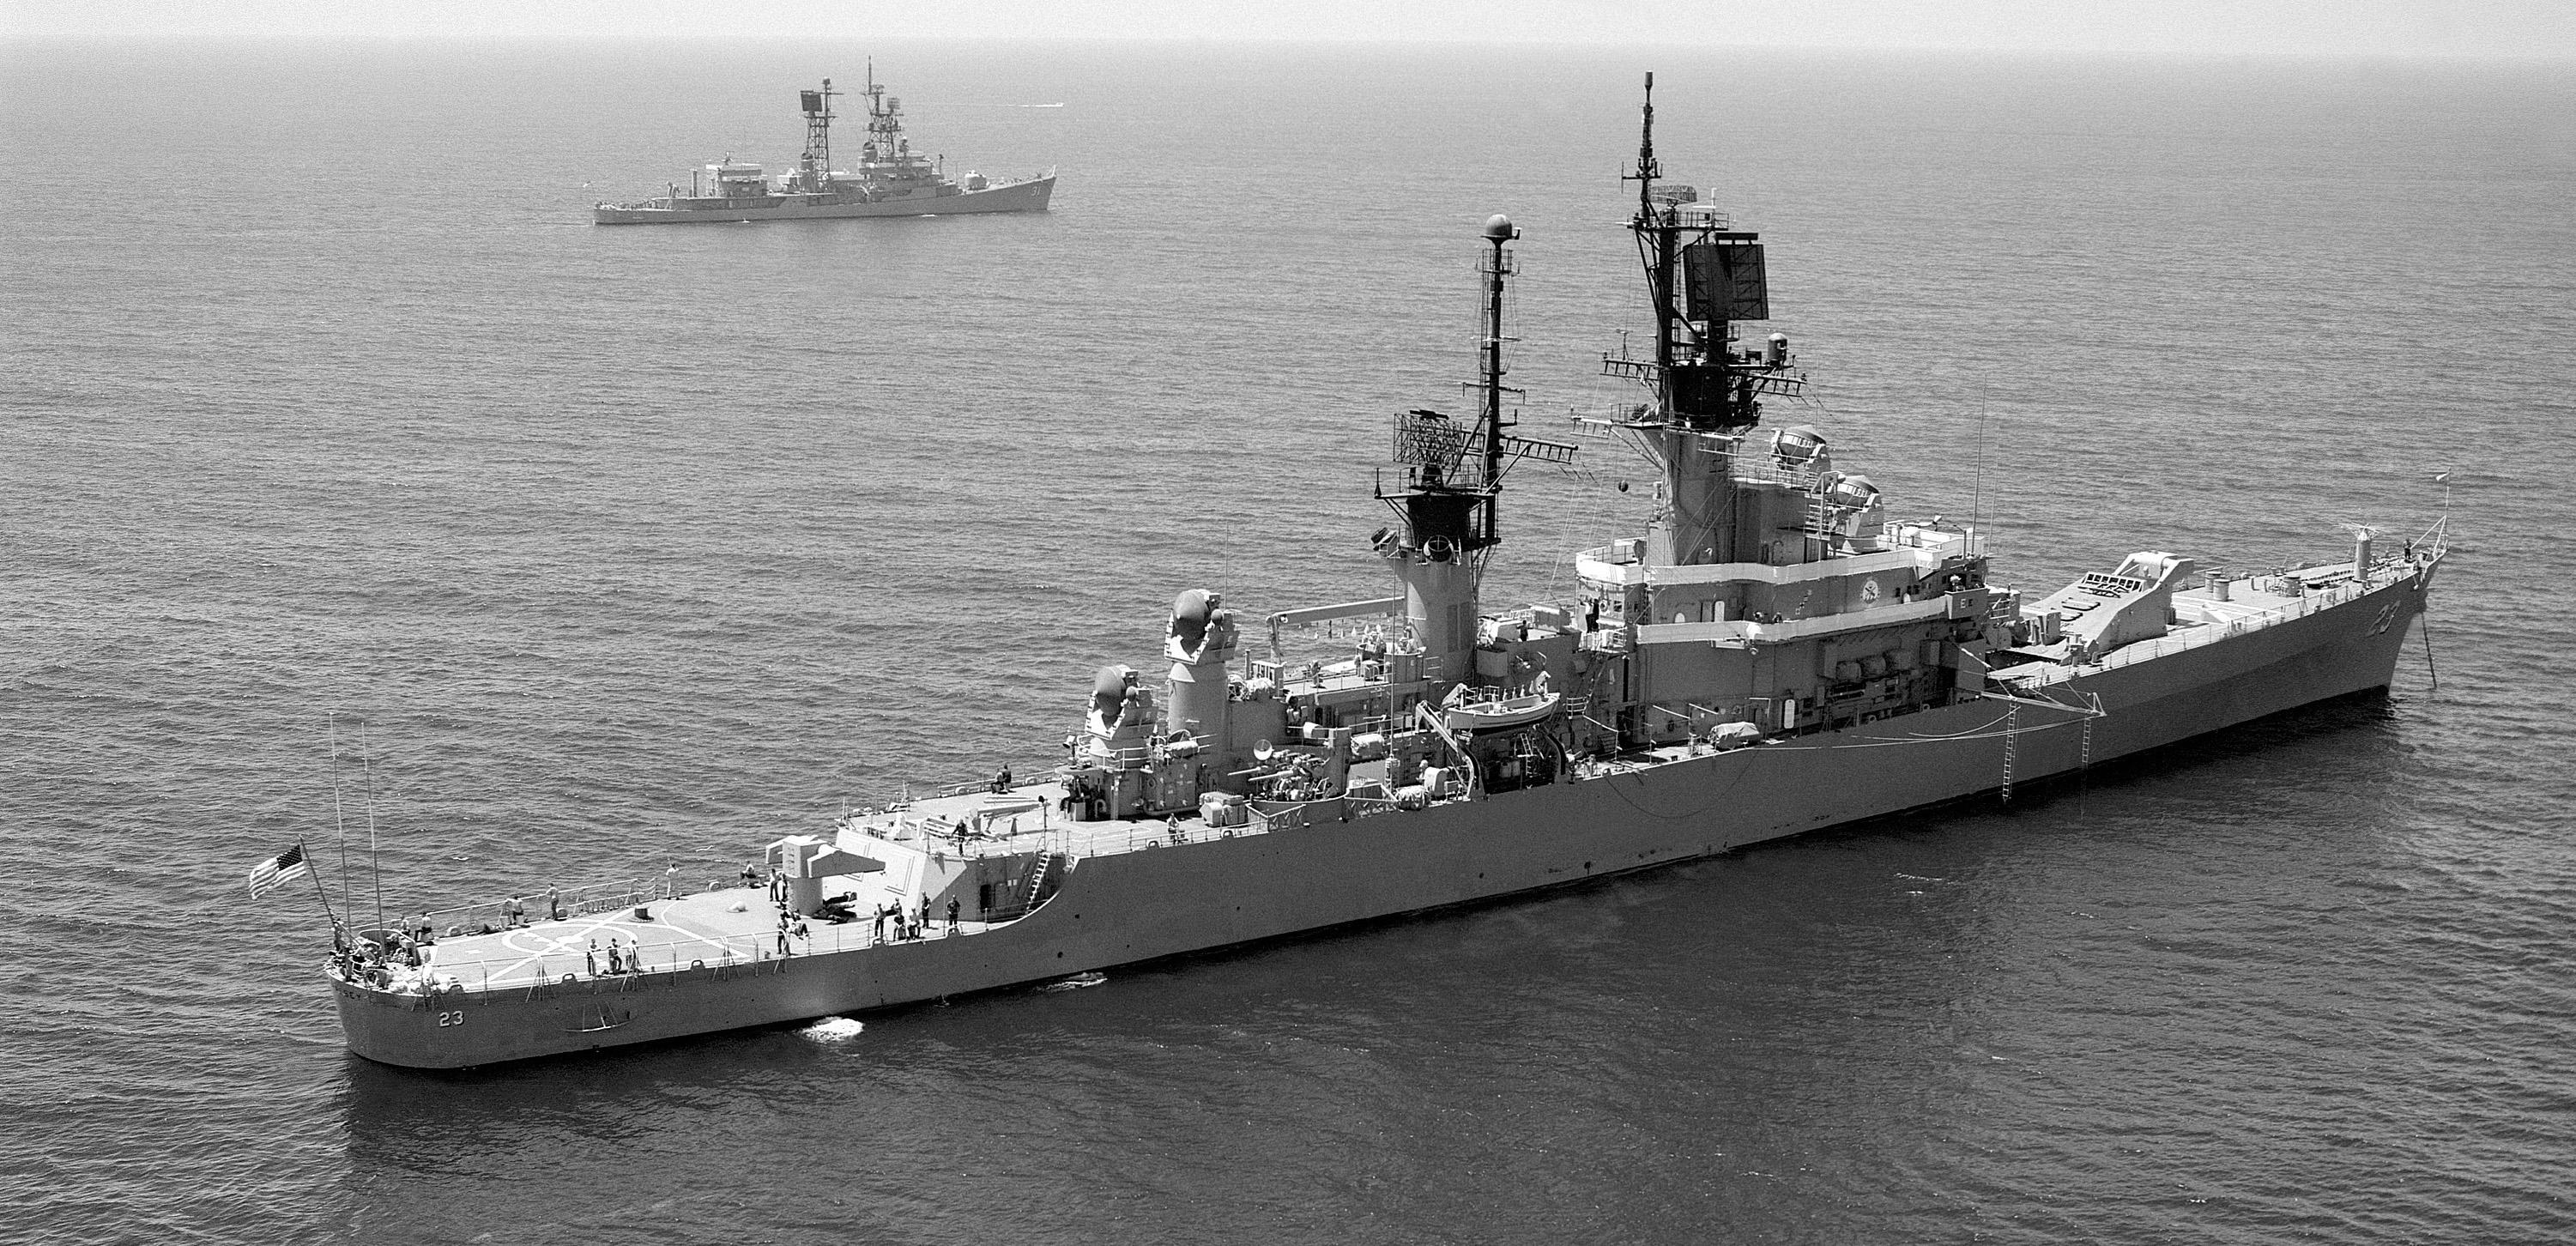 艘:3 艘 cg-10 奥尔巴尼级,1962-1964 年服役,最强的初代导弹巡洋舰